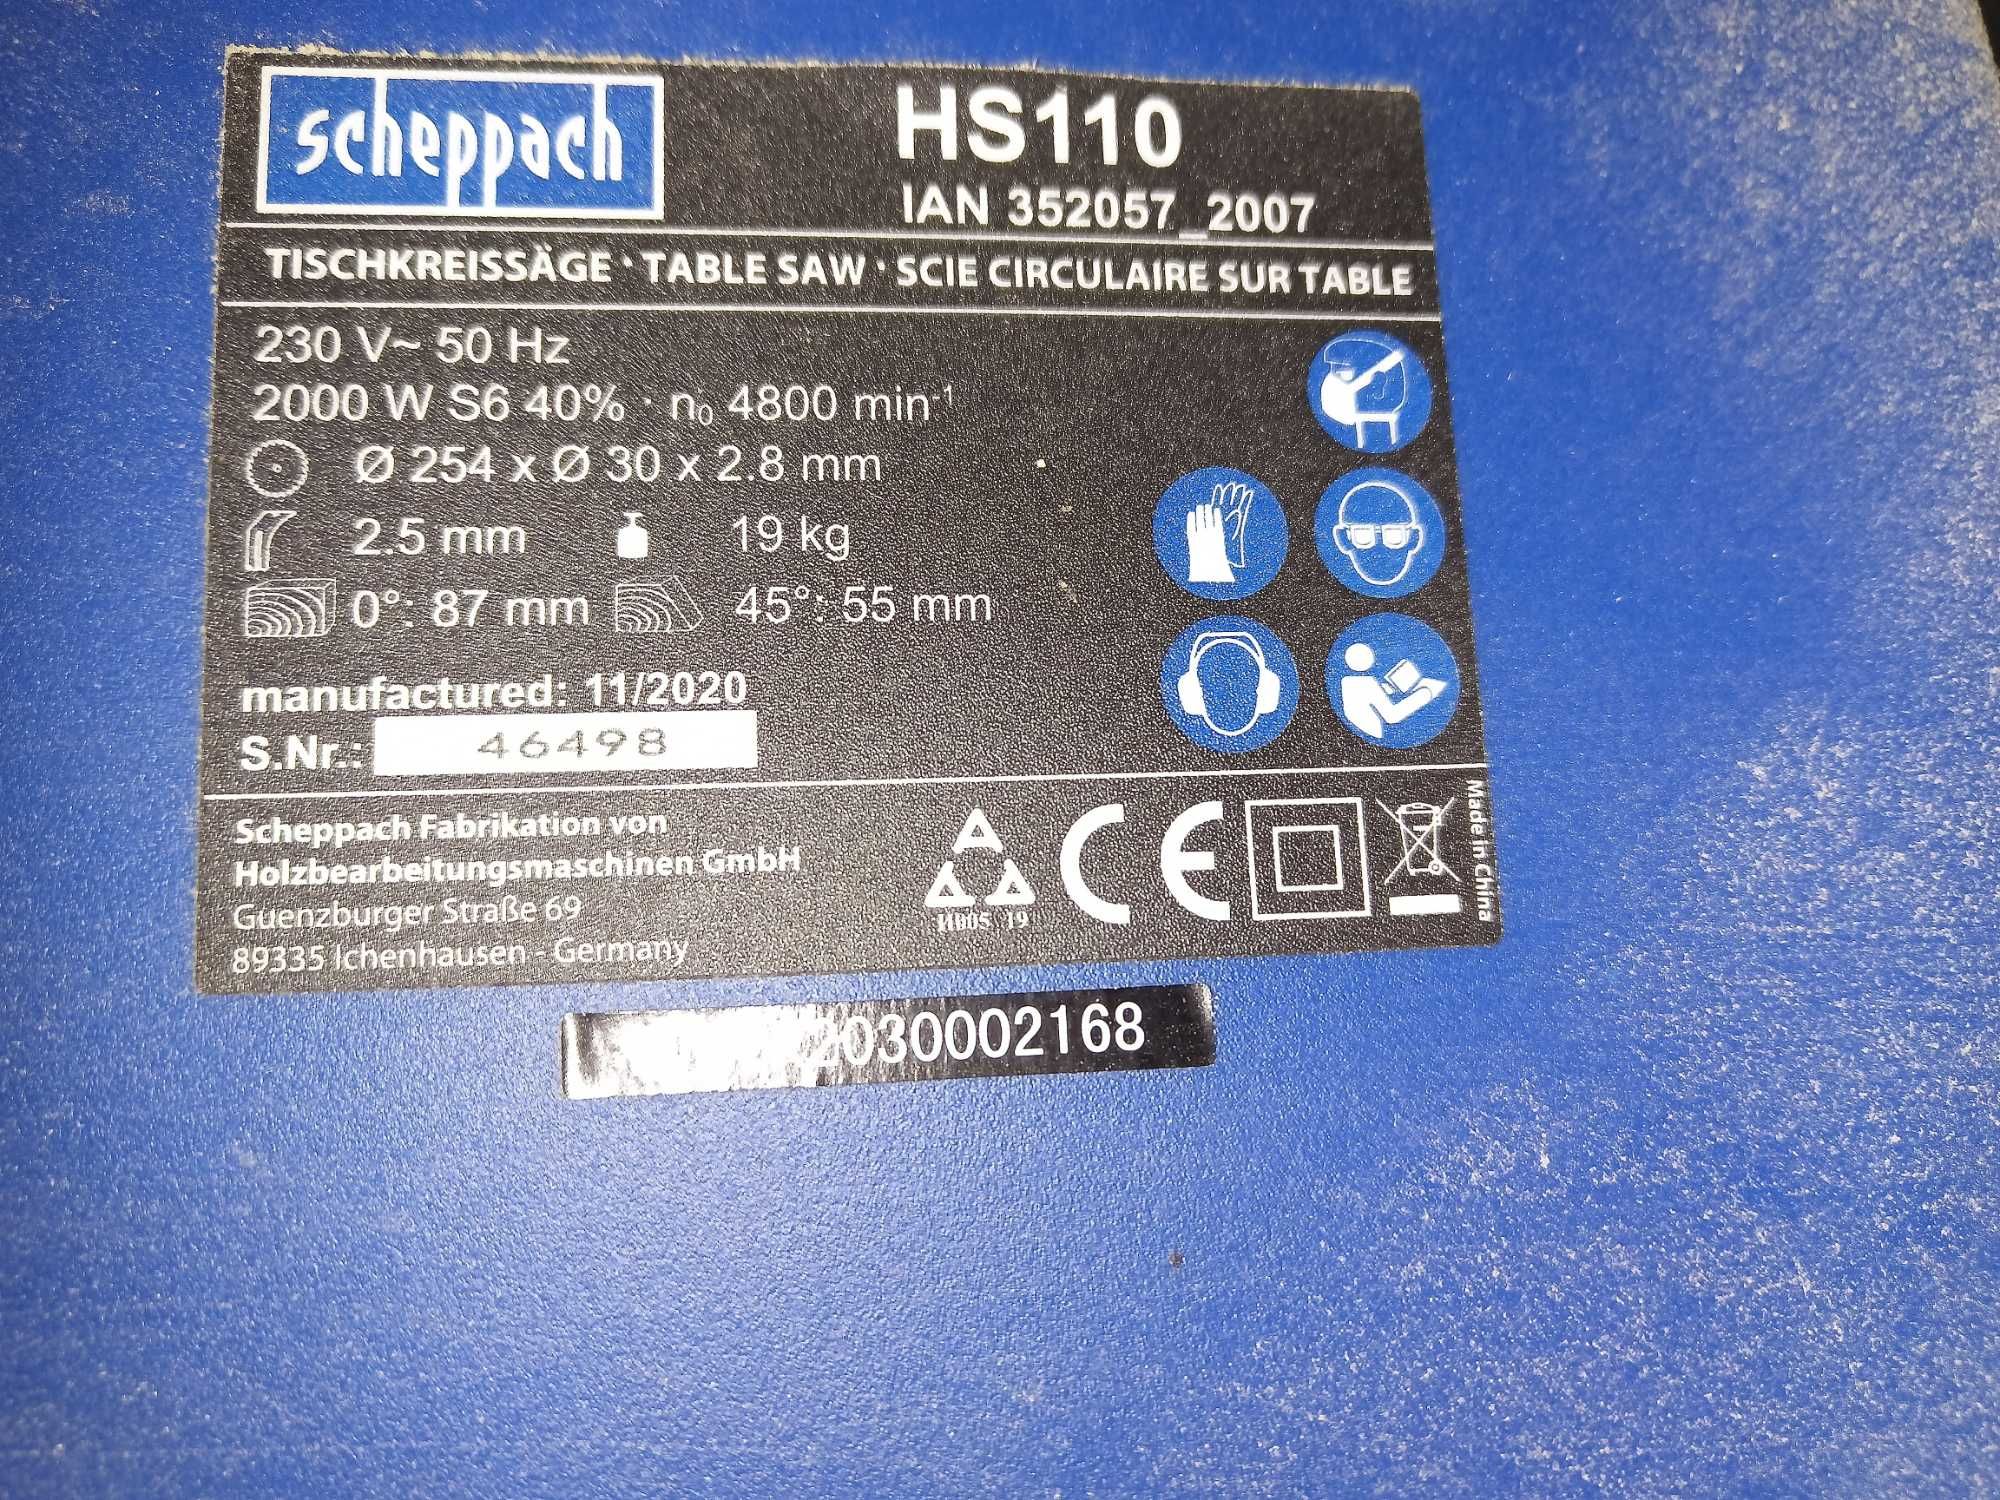 Circular cu masa Scheppach HS110 cu accesorii (motor defect)